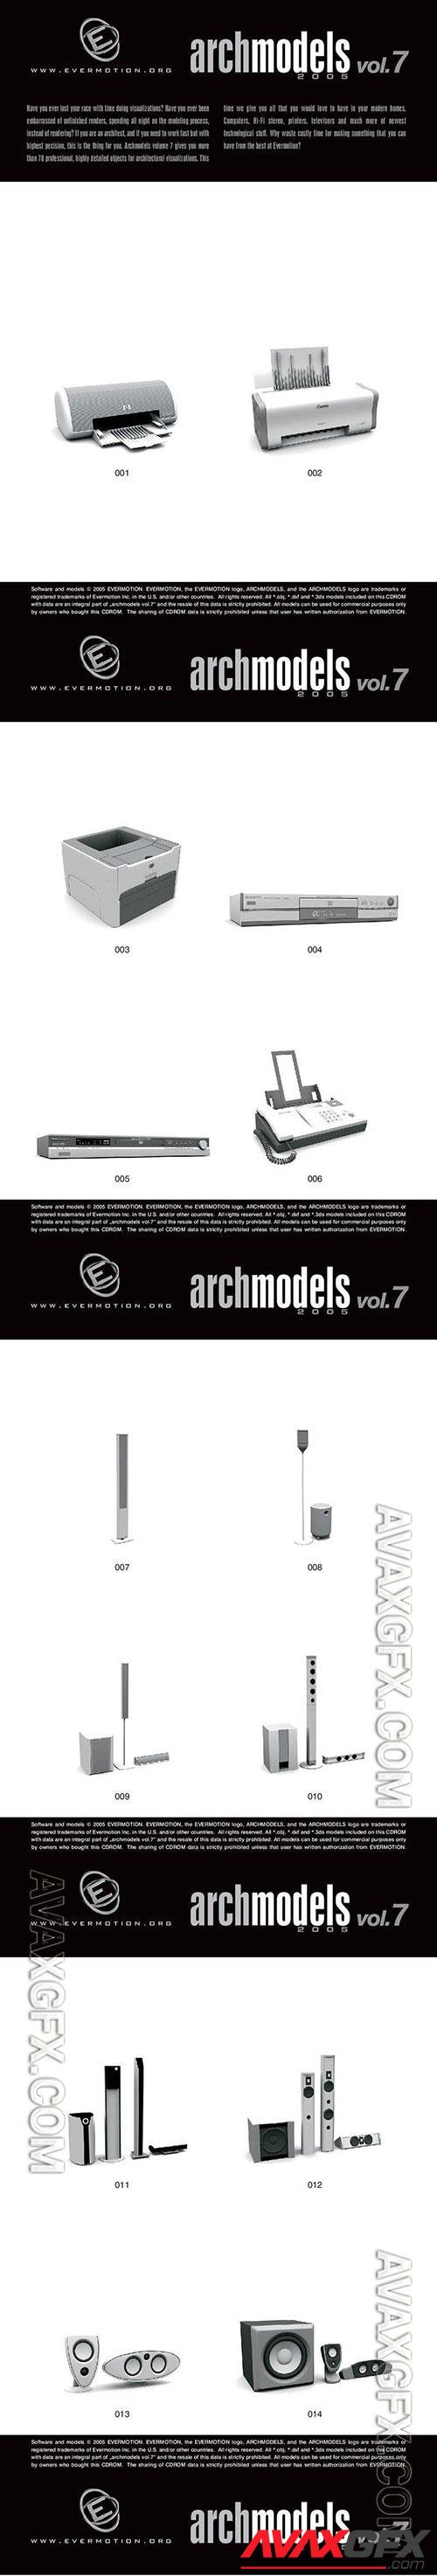 3D Models Evermotion Archmodels v 007